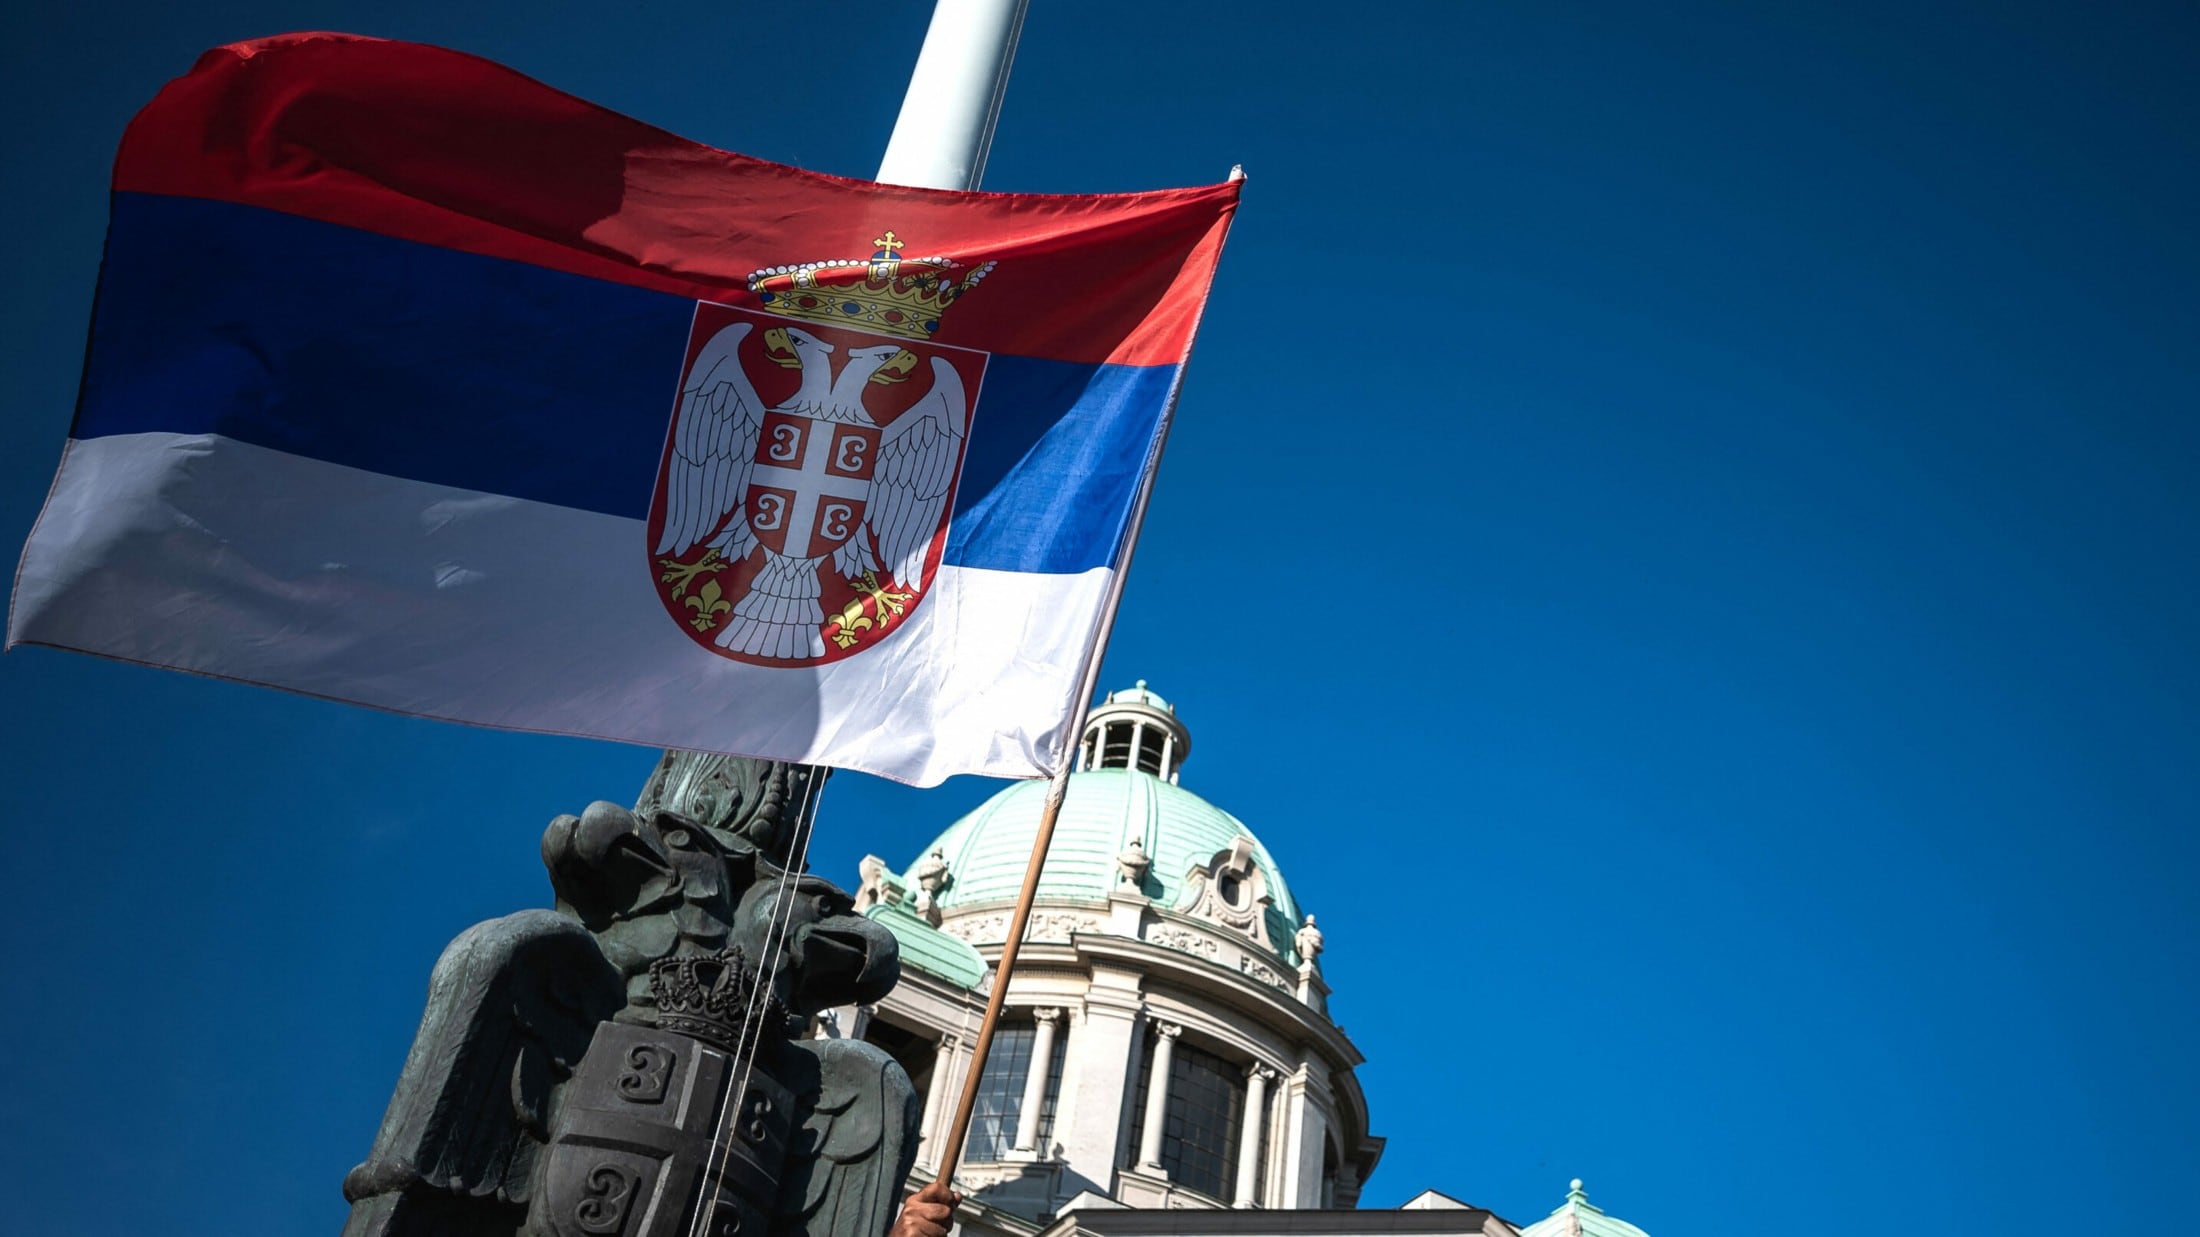 Serbische Fahne mit Stab